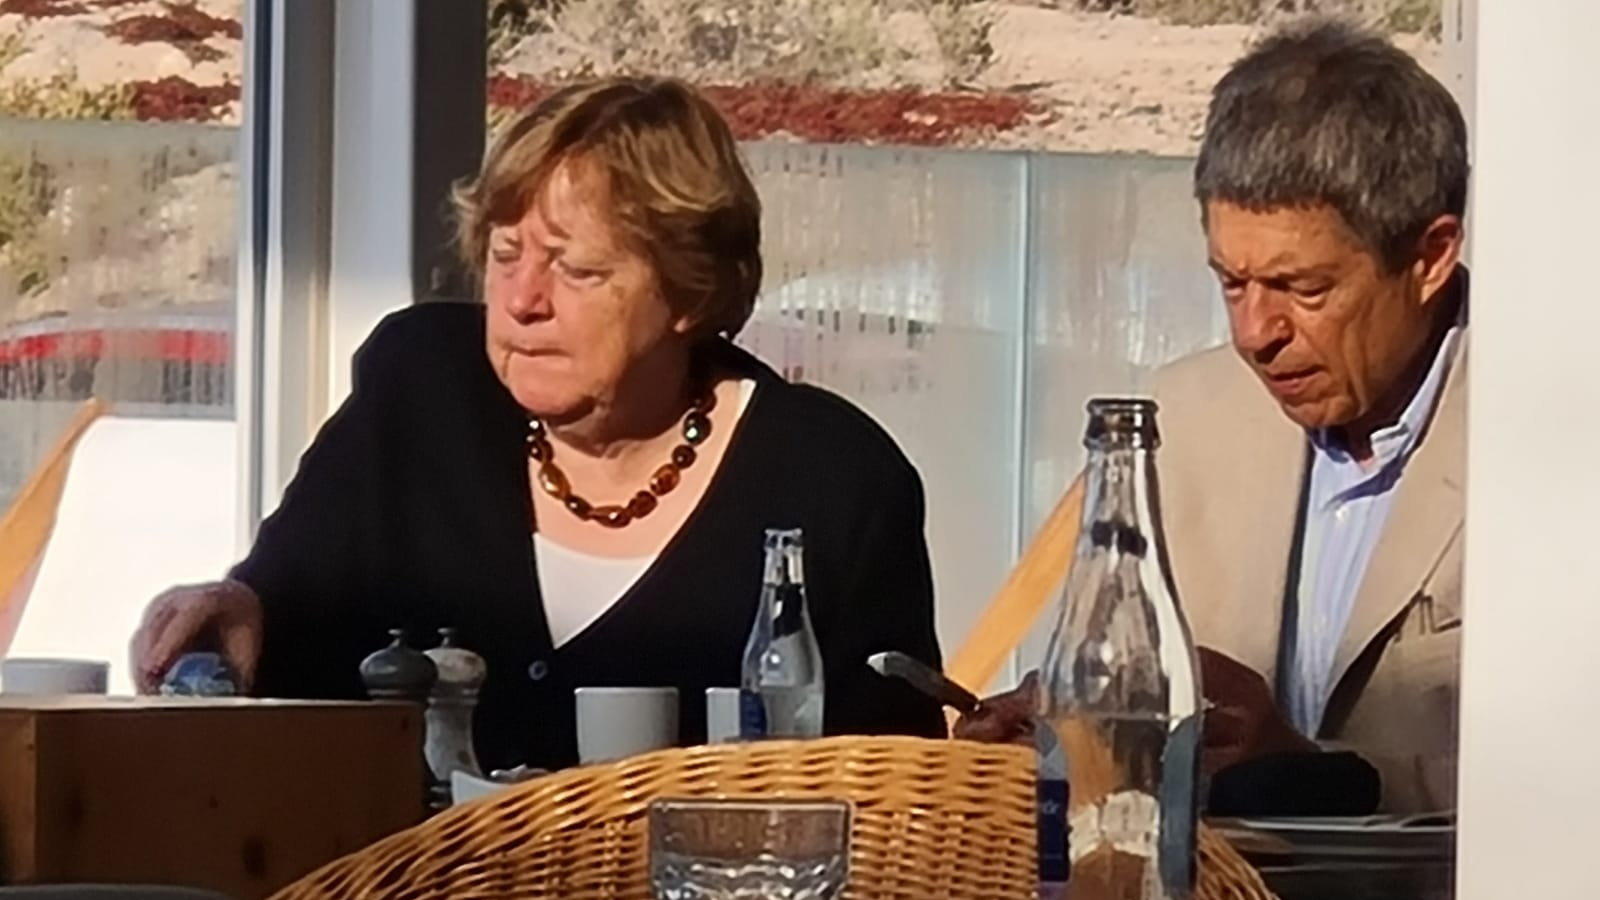 Altkanzlerin Angela Merkel (68) ist ganz entspannt mit ihrem Mann Joachim Sauer (73) beim Essen auf Fuerteventura.